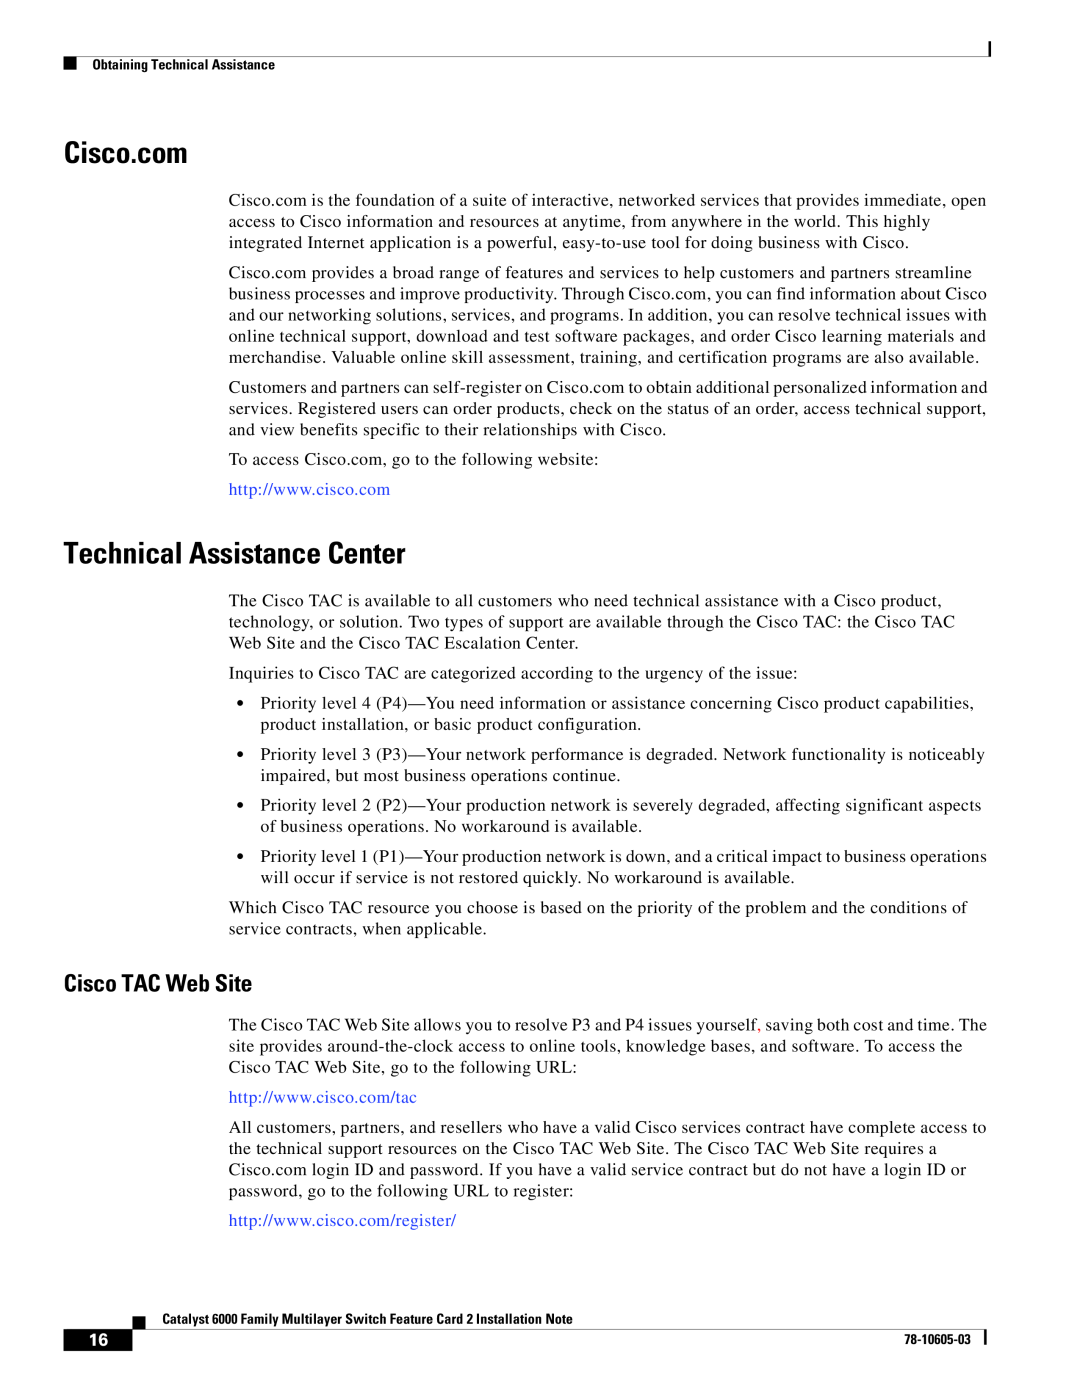 Cisco Systems WS-F6K-MSFC2 manual Cisco.com, Technical Assistance Center, Cisco TAC Web Site 